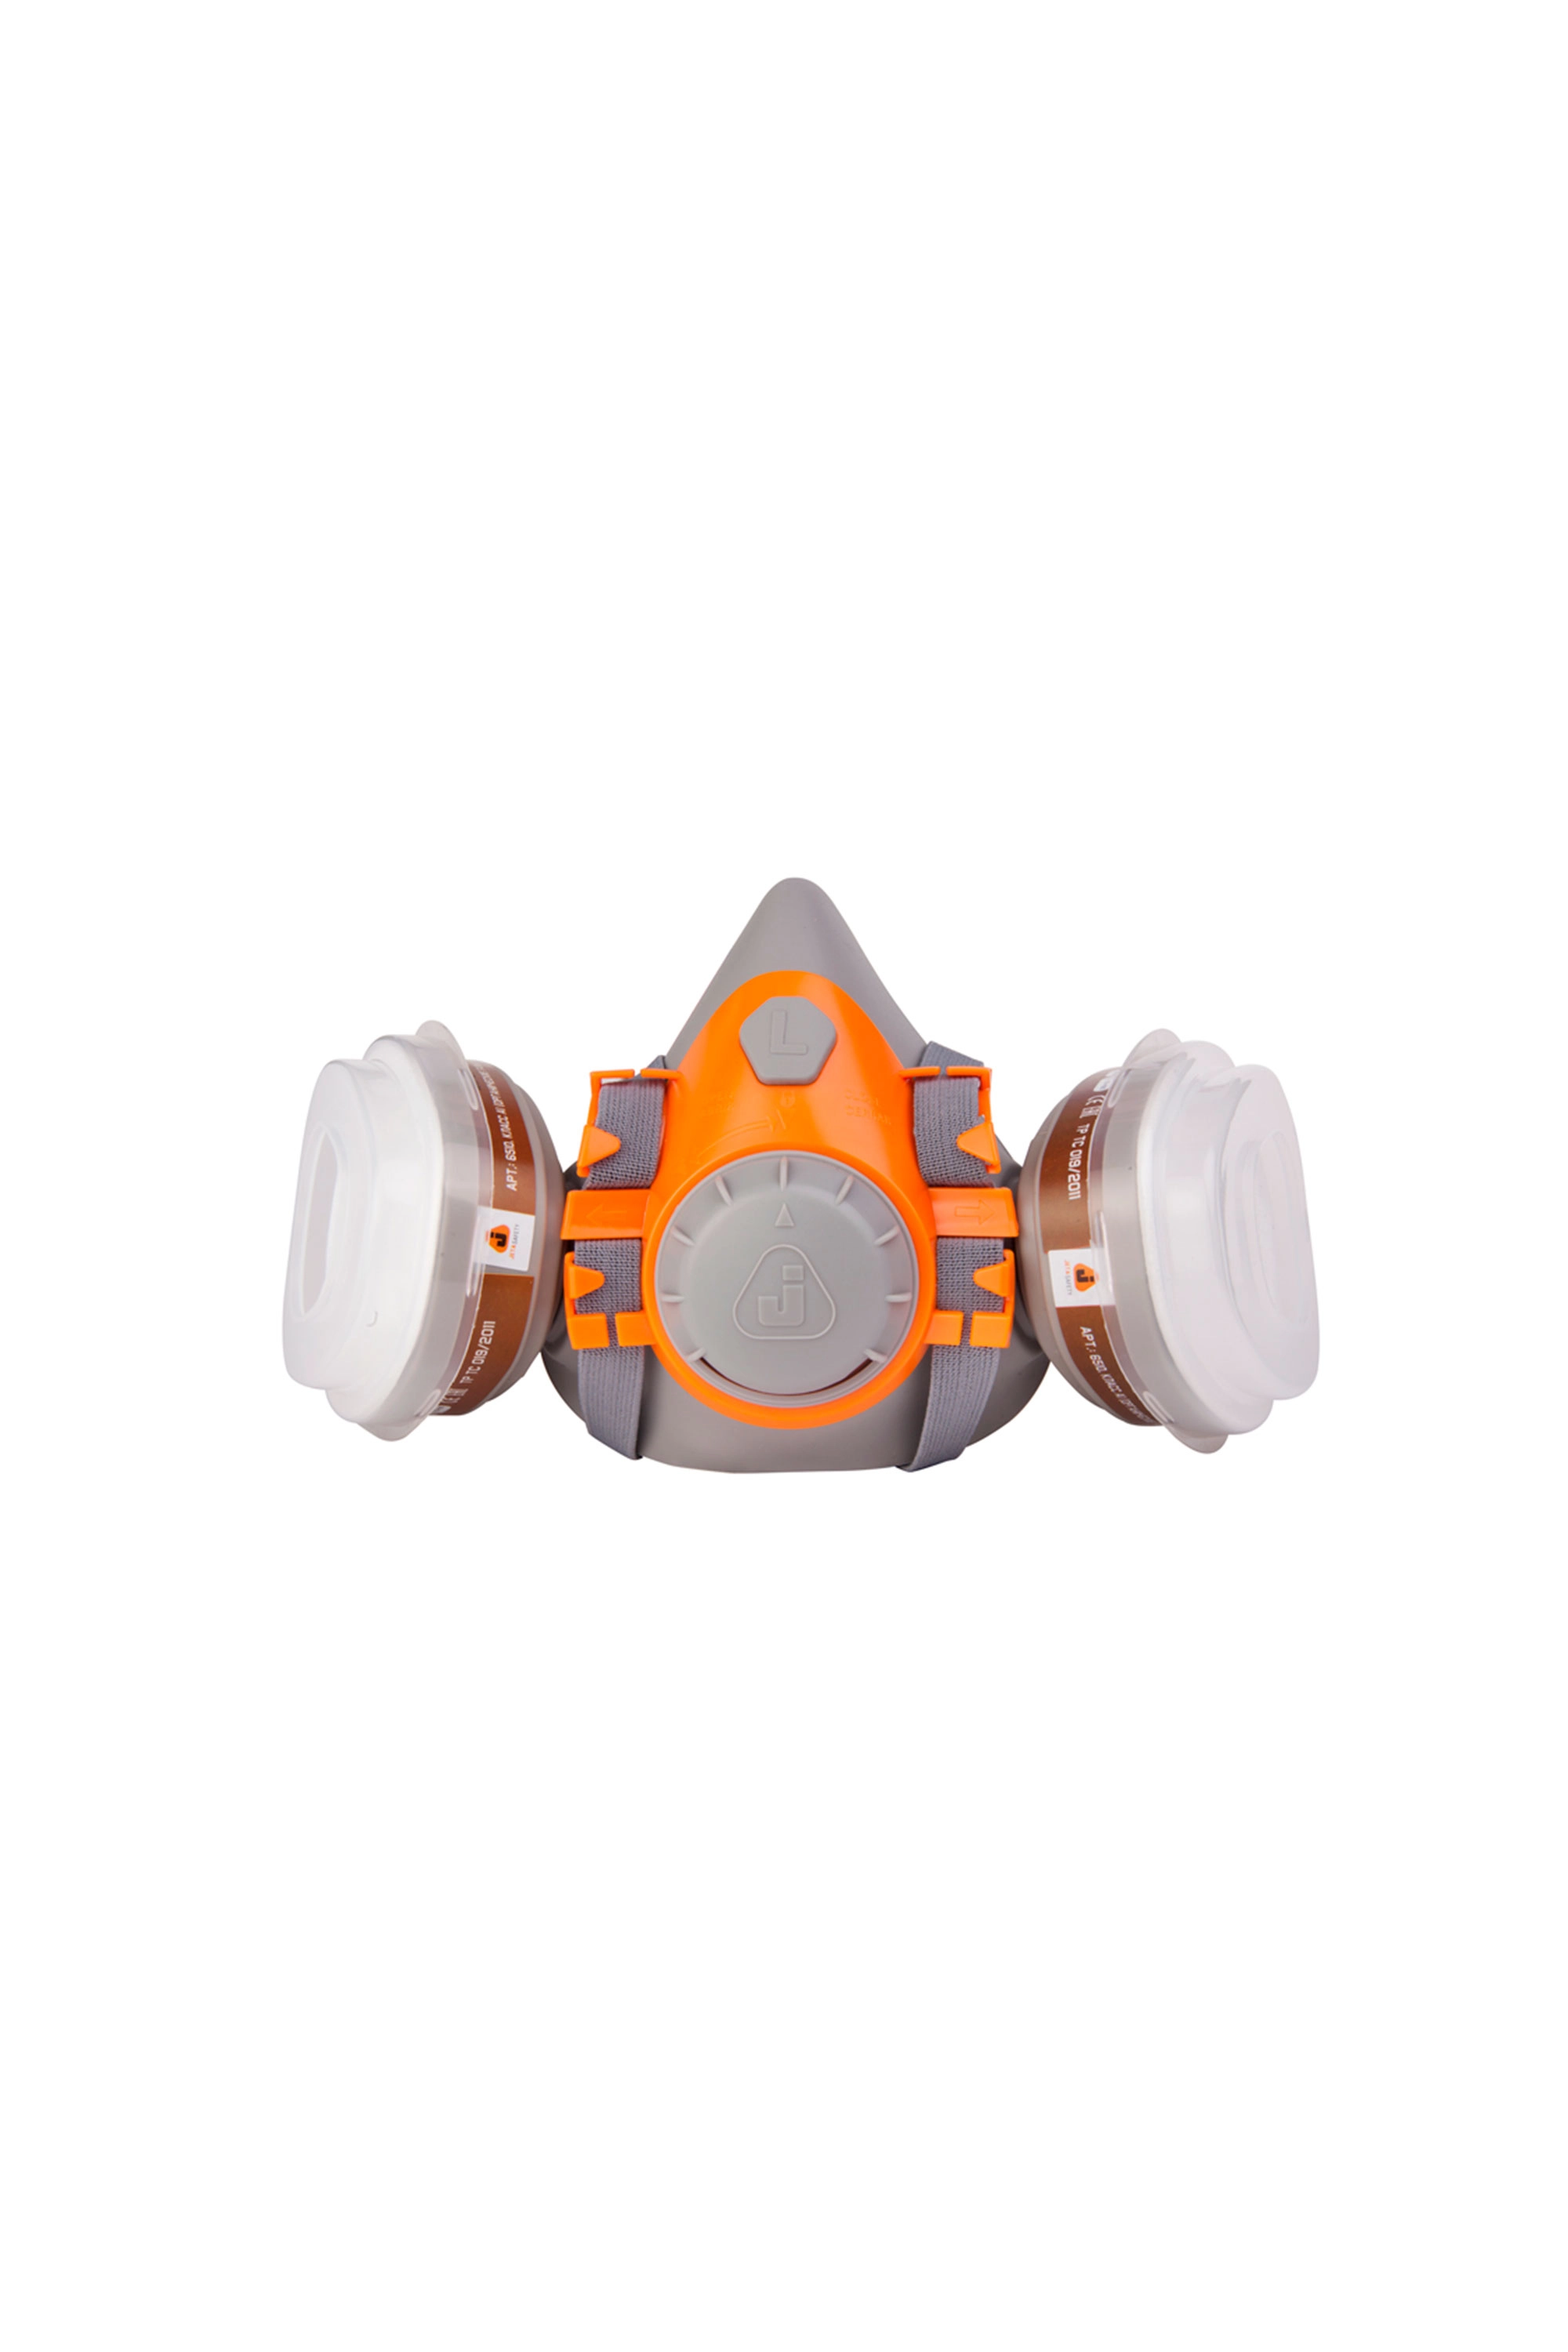 Комплект для защиты дыхания Jeta Safety J-Set 6500: А1 (2 шт), P2 (4 шт), держатели (2 шт)